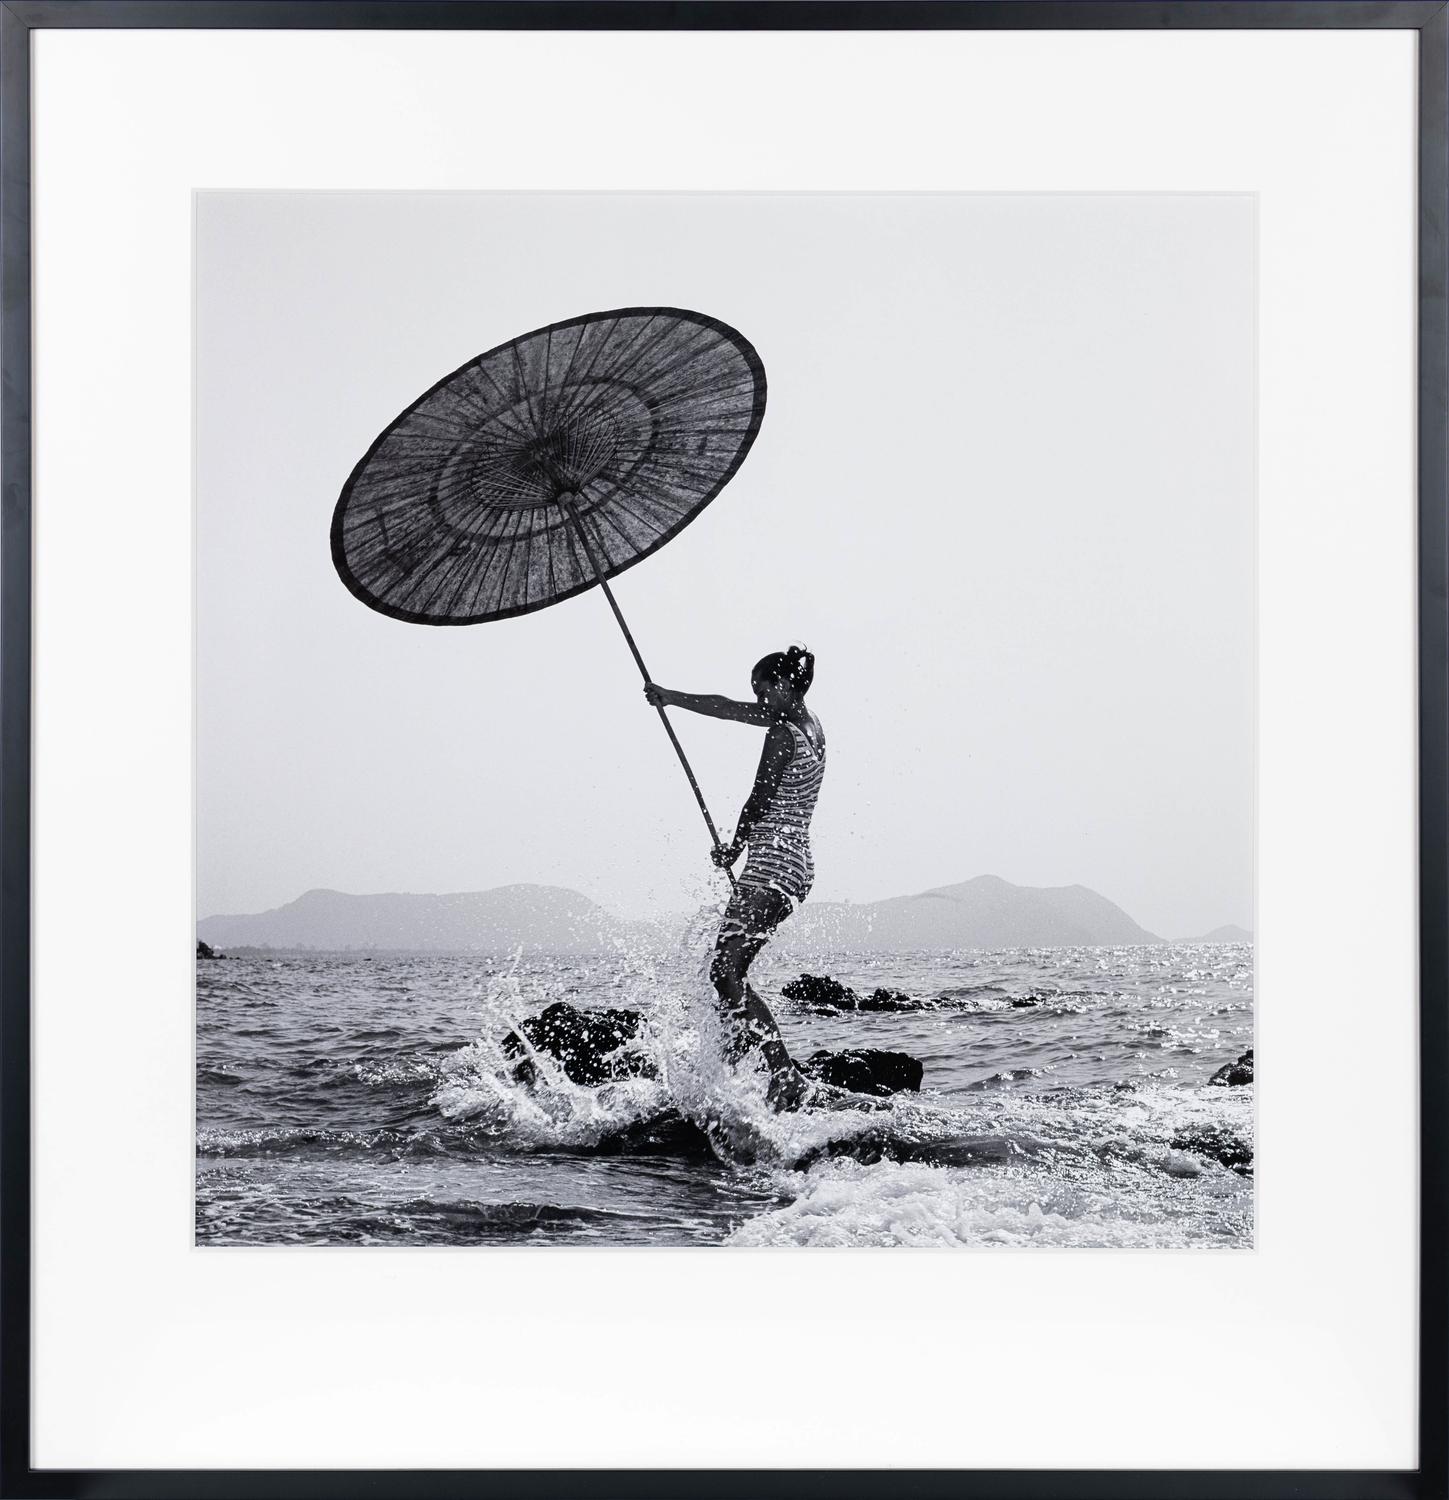 Parasol: Susy Dyson, Thailand, 1977